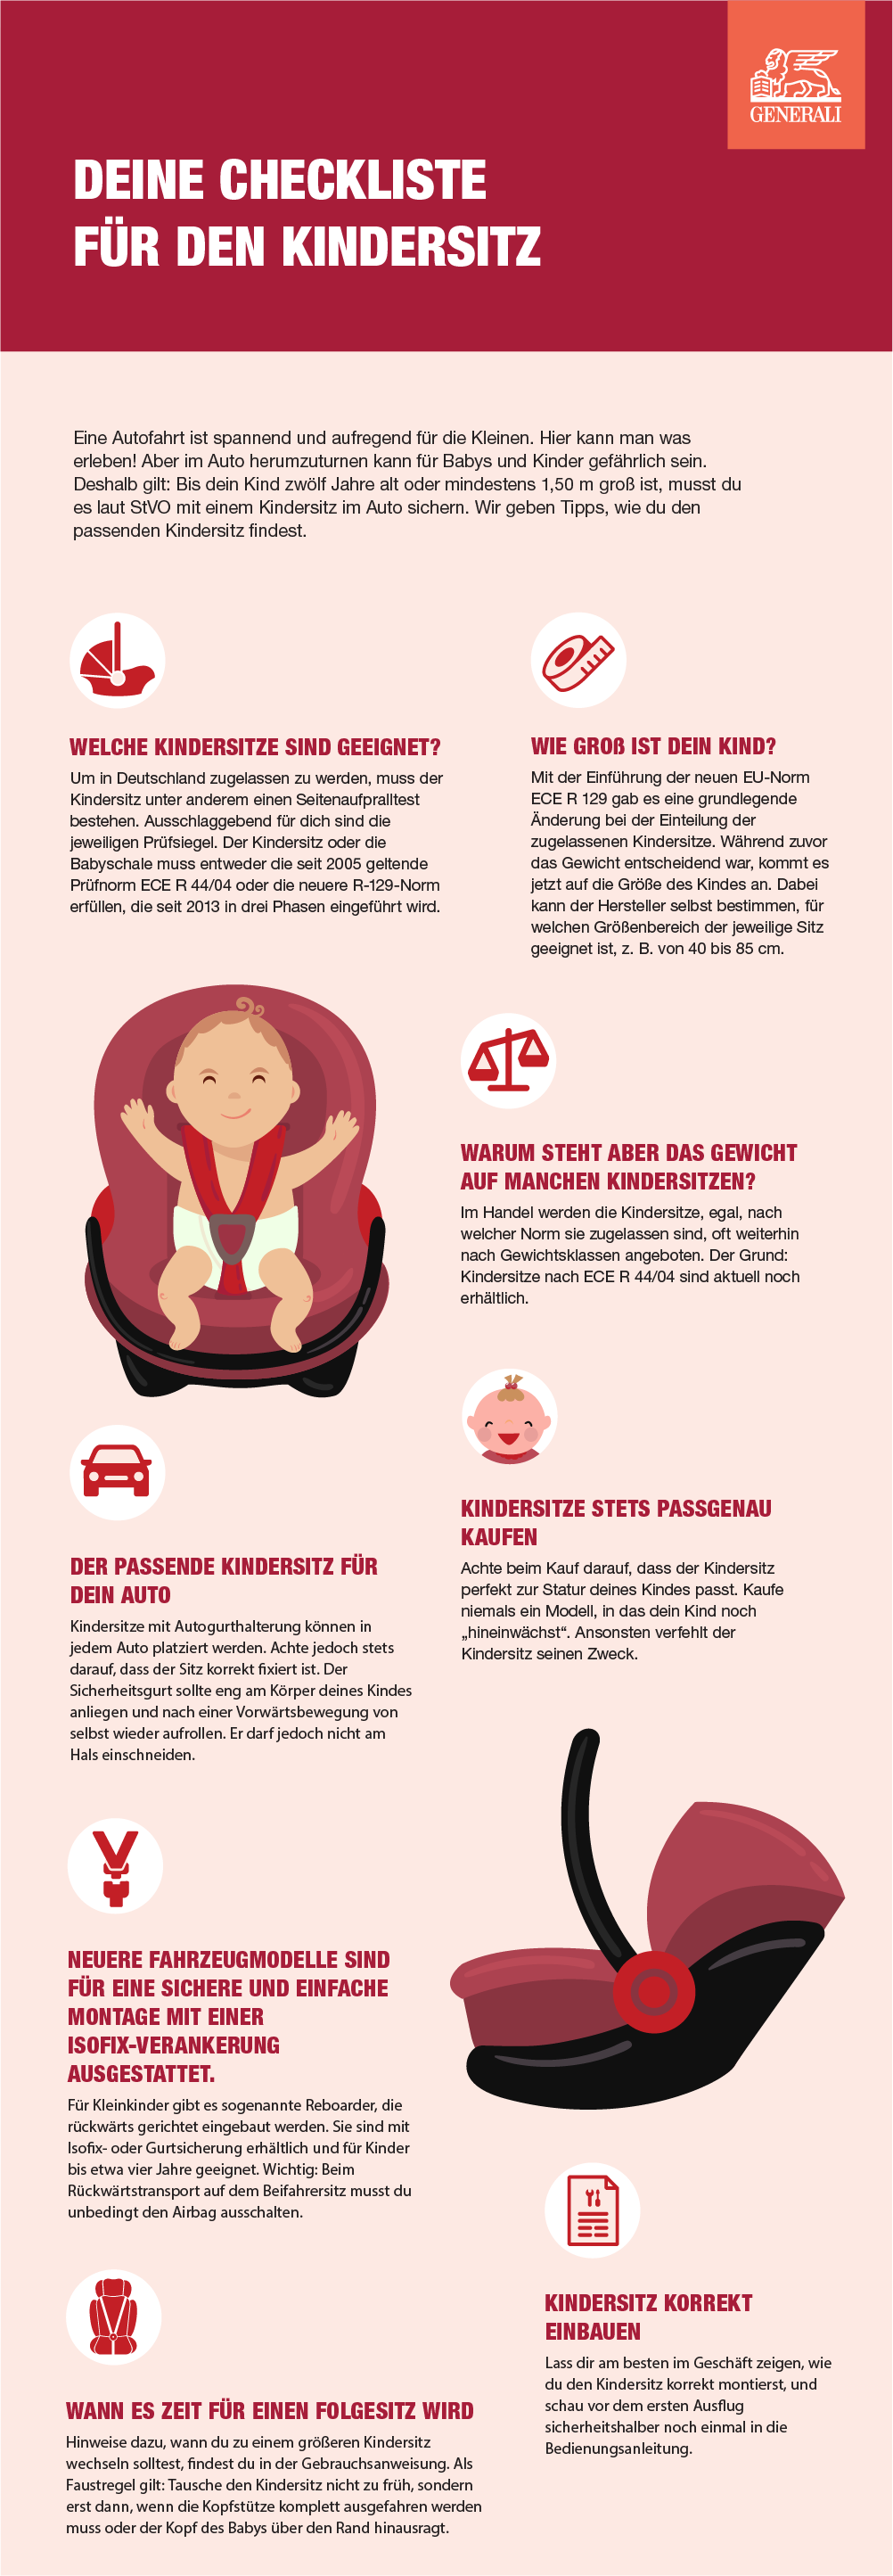 Infografik mit J´Hinweisen für eine sichere Autofahrt mit Kindern